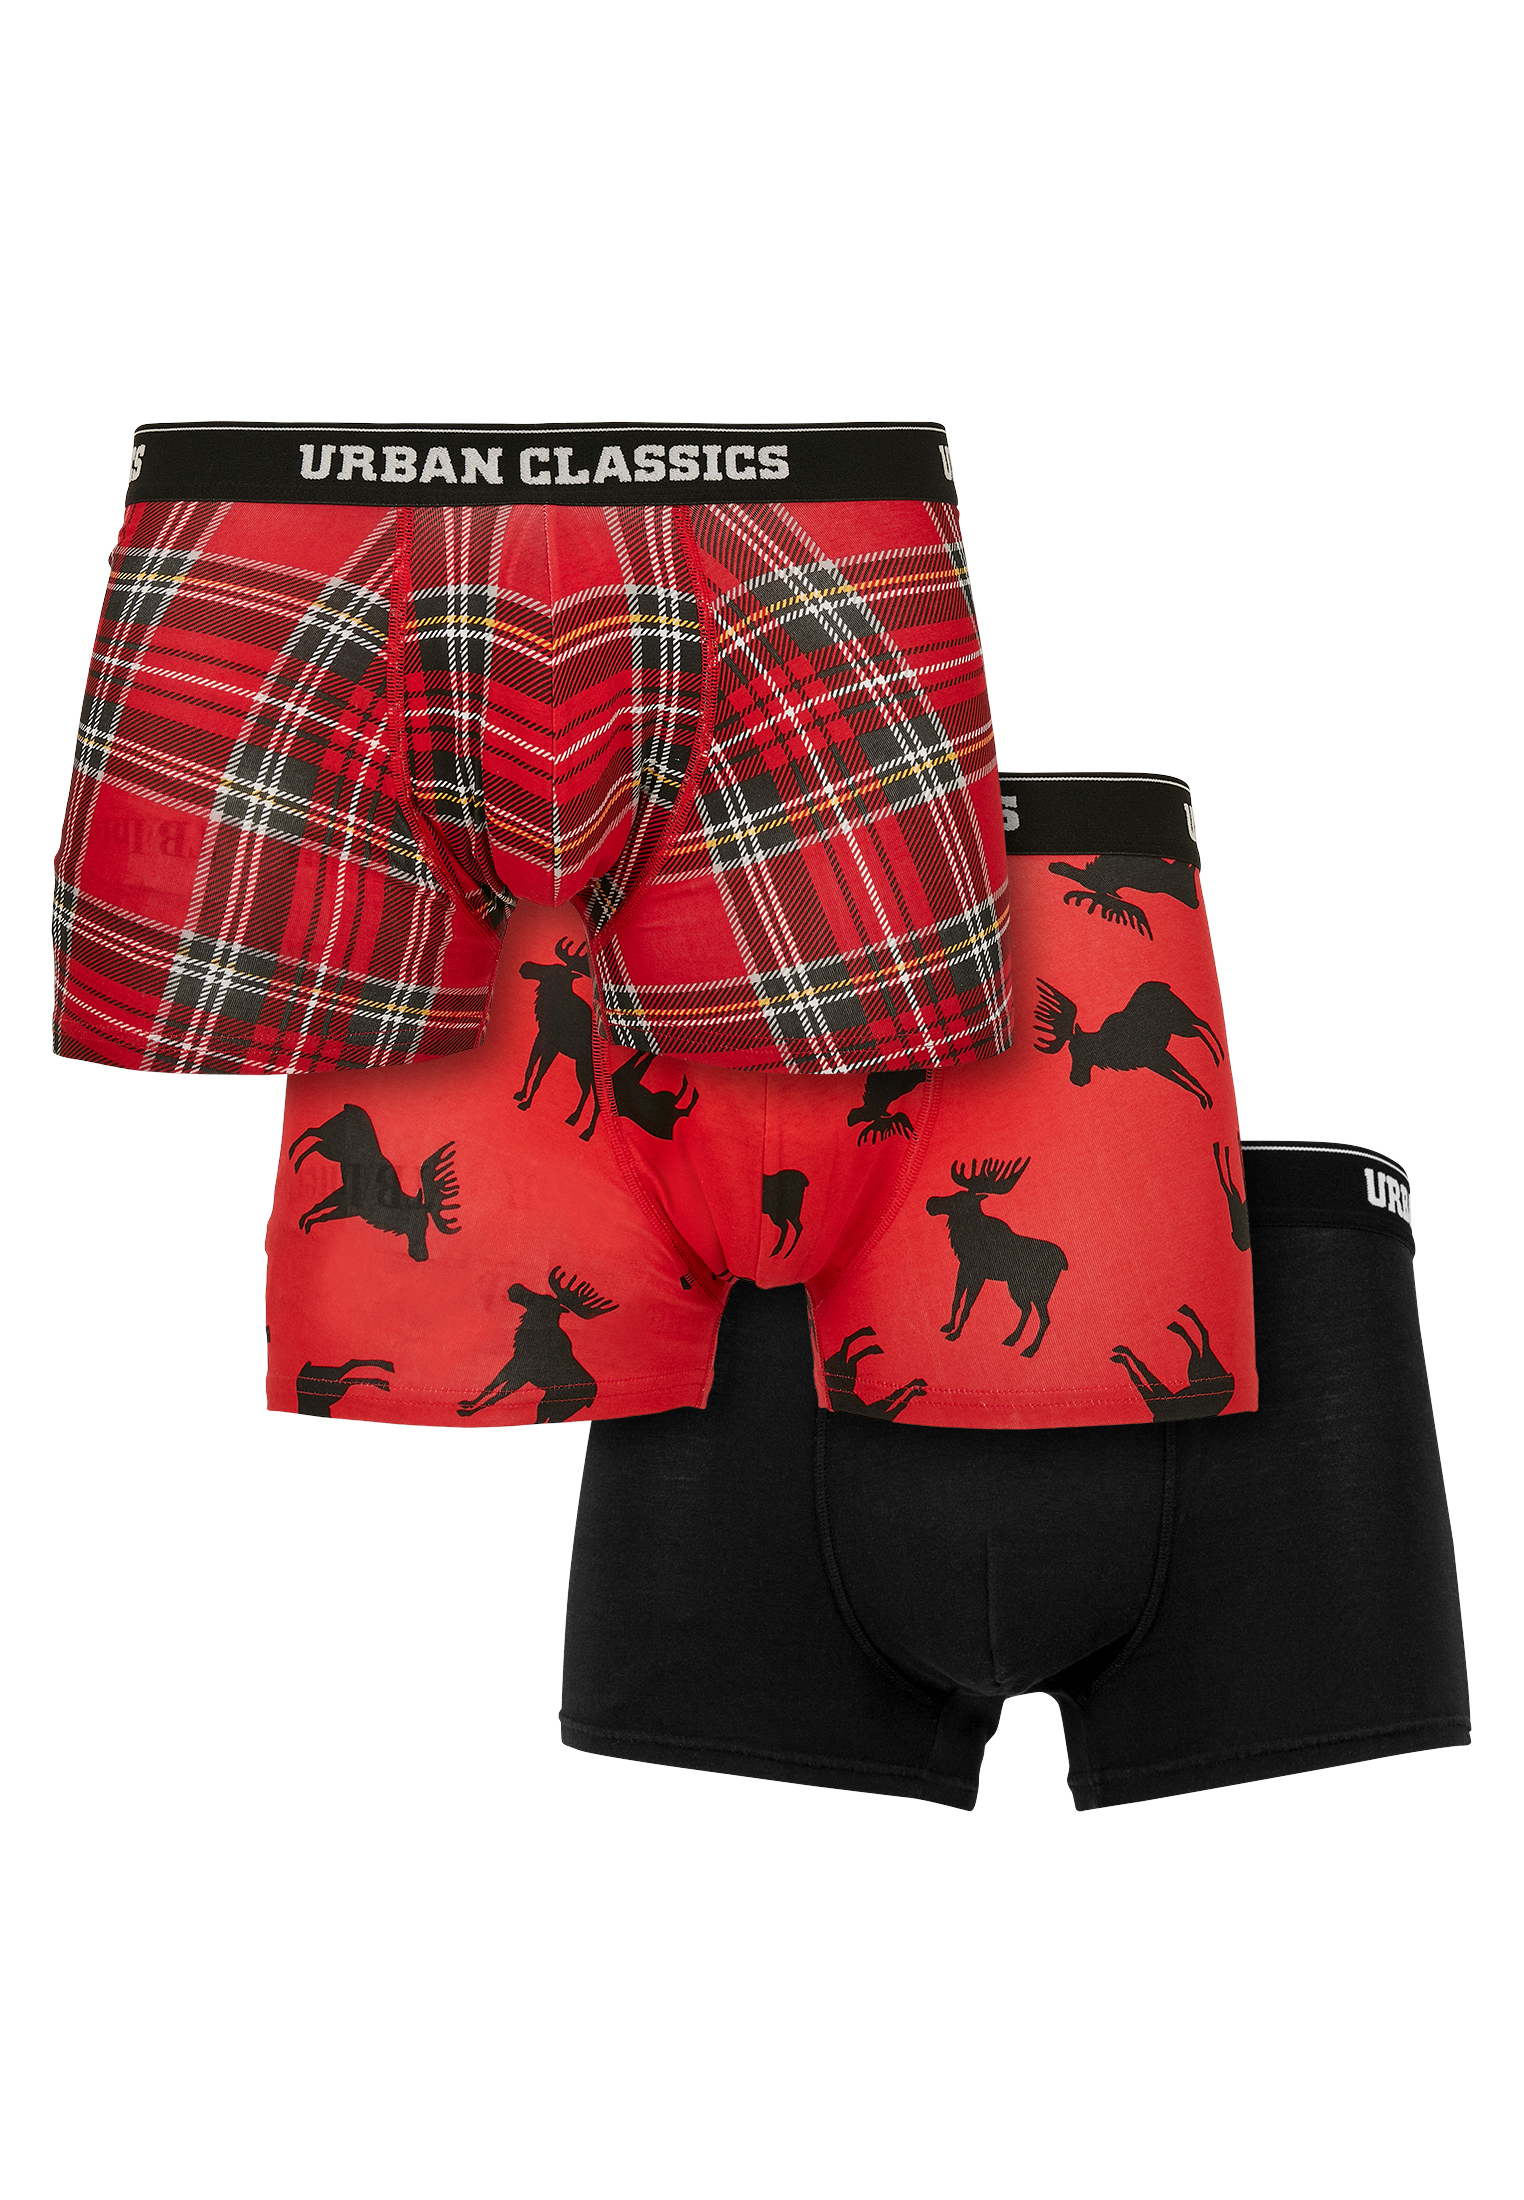 разъем intro aop 08 Боксеры Urban Classics Boxershorts, цвет red plaid aop+moose aop+blk